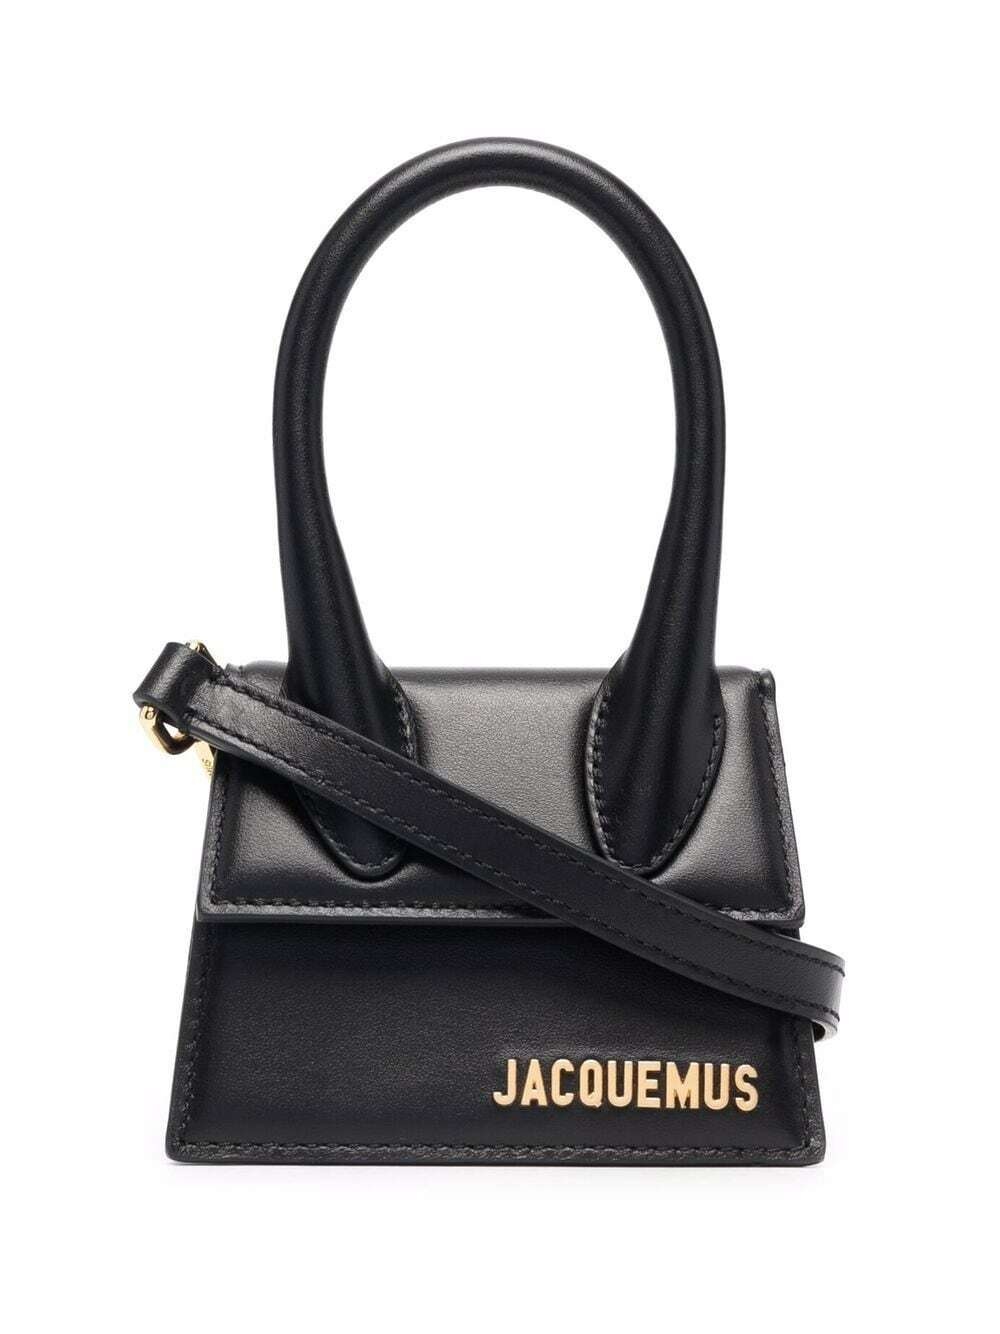 JACQUEMUS - Le Chiquito Handbag Jacquemus